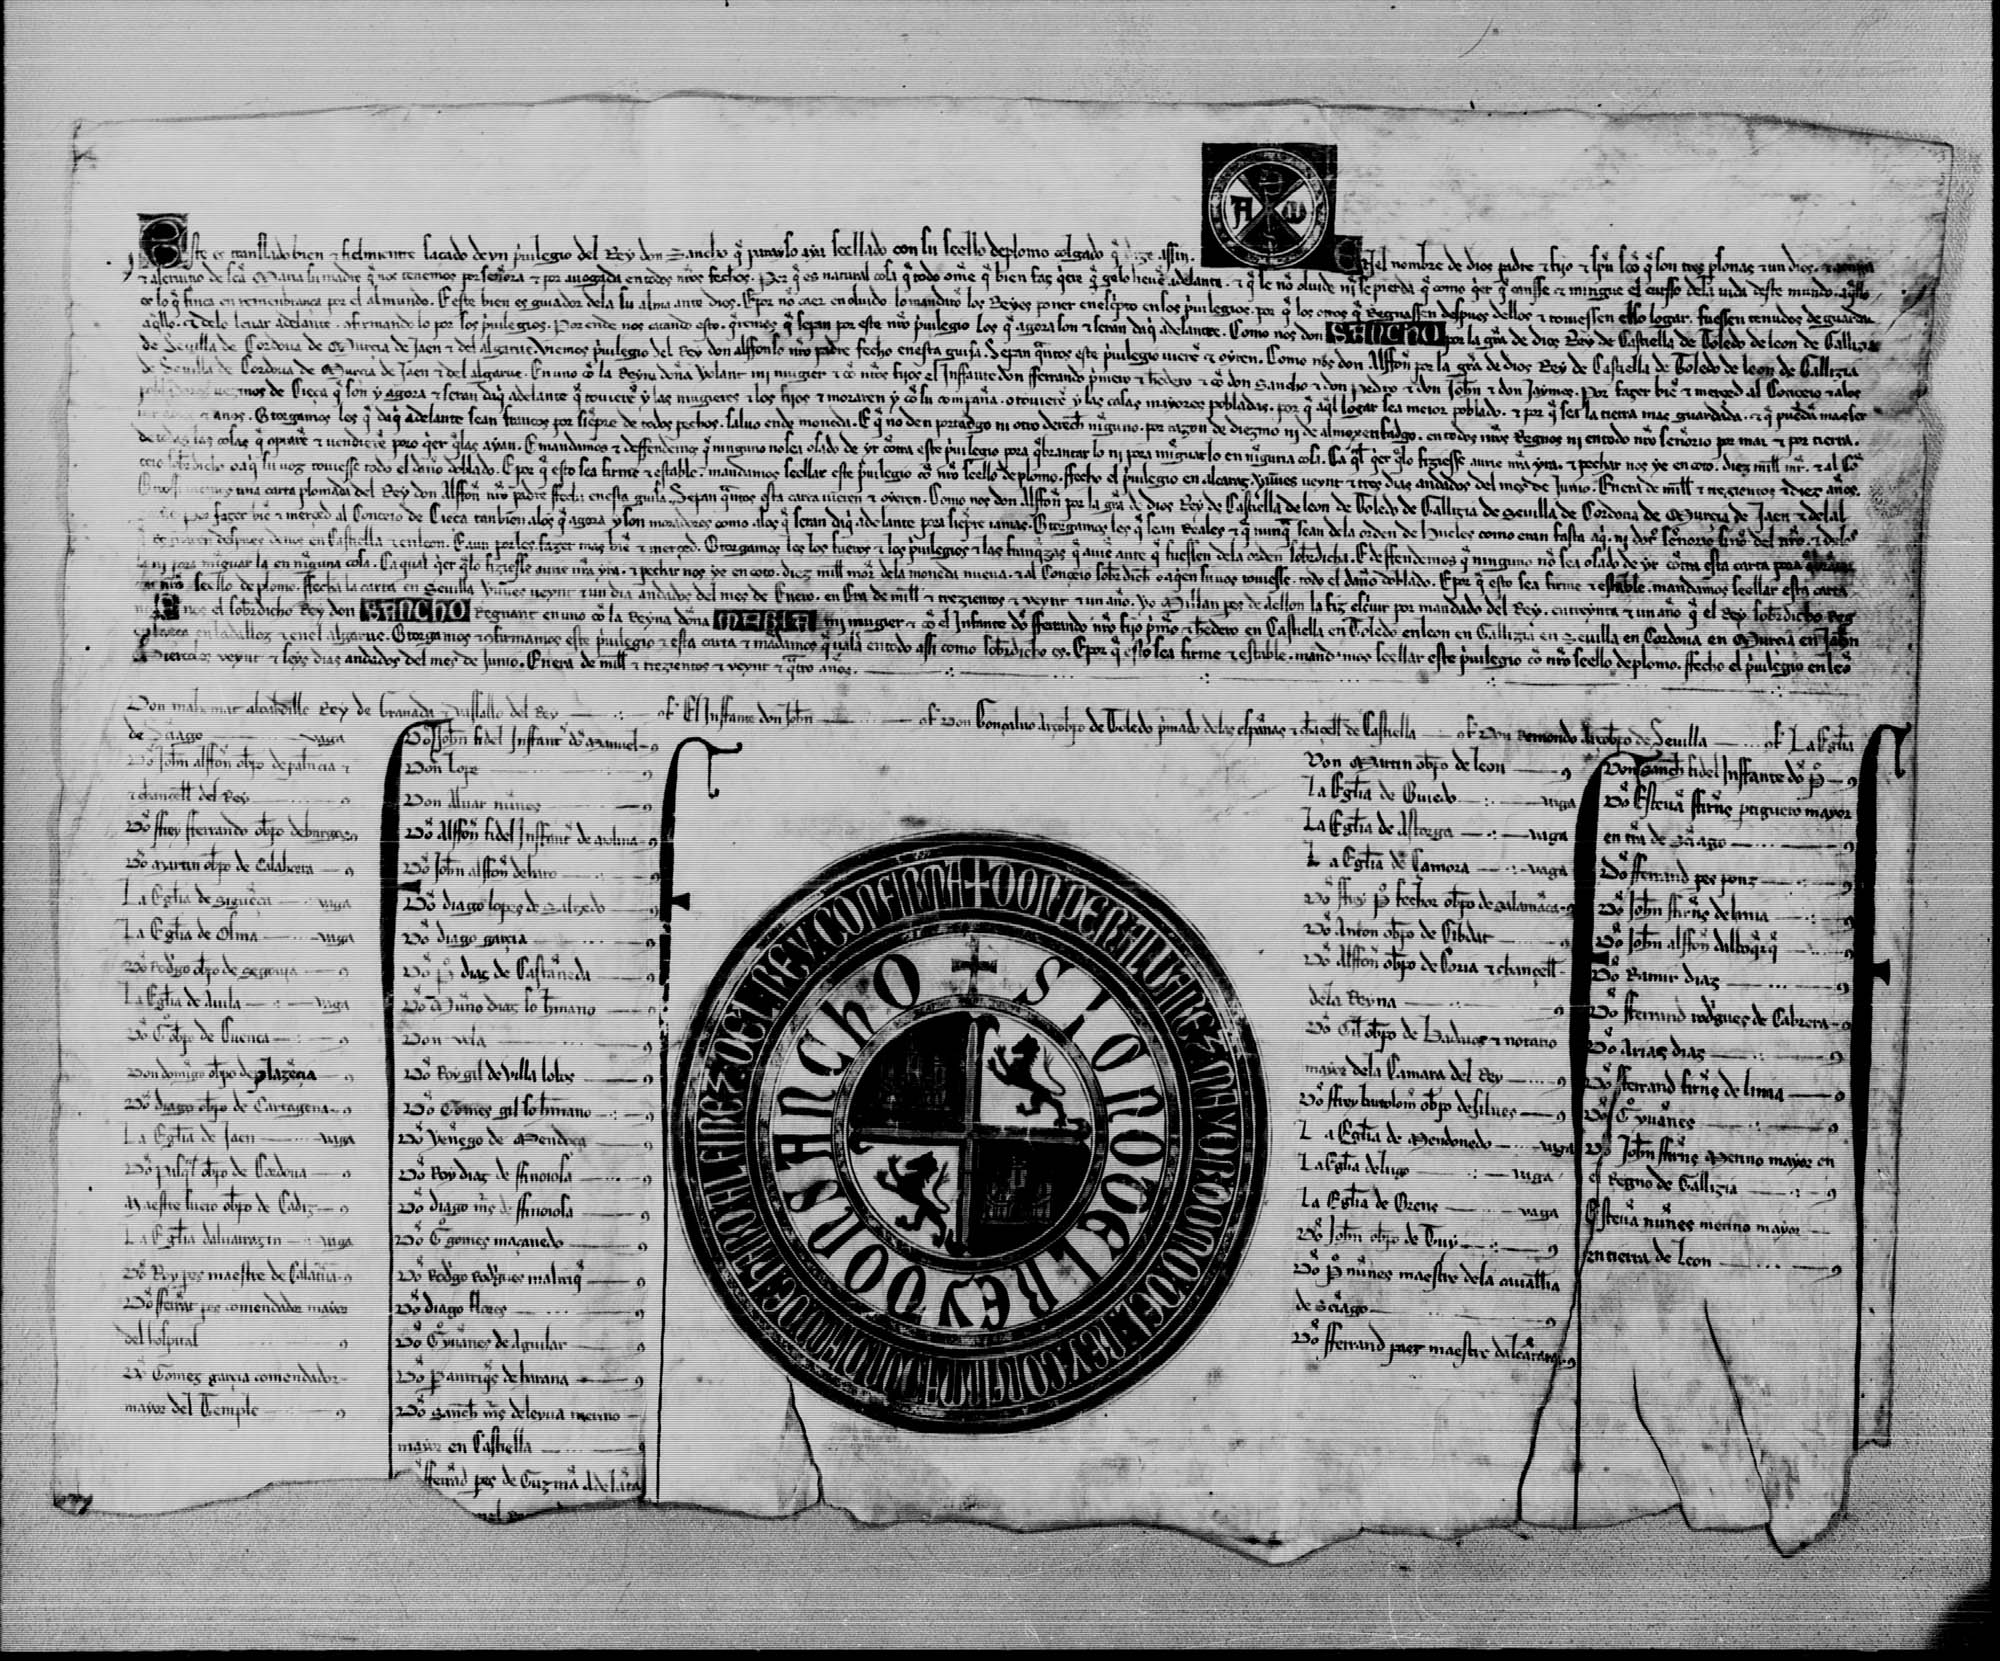 Privilegio rodado de Sancho IV confirmando a la villa de Cieza el privilegio de exención de pechos, otorgado por Alfonso X en Alcaraz el 23 de junio de 1272, y el privilegio de ser siempre realengo, otorgado por Alfonso X en Sevilla el 21 de enero de 1283.